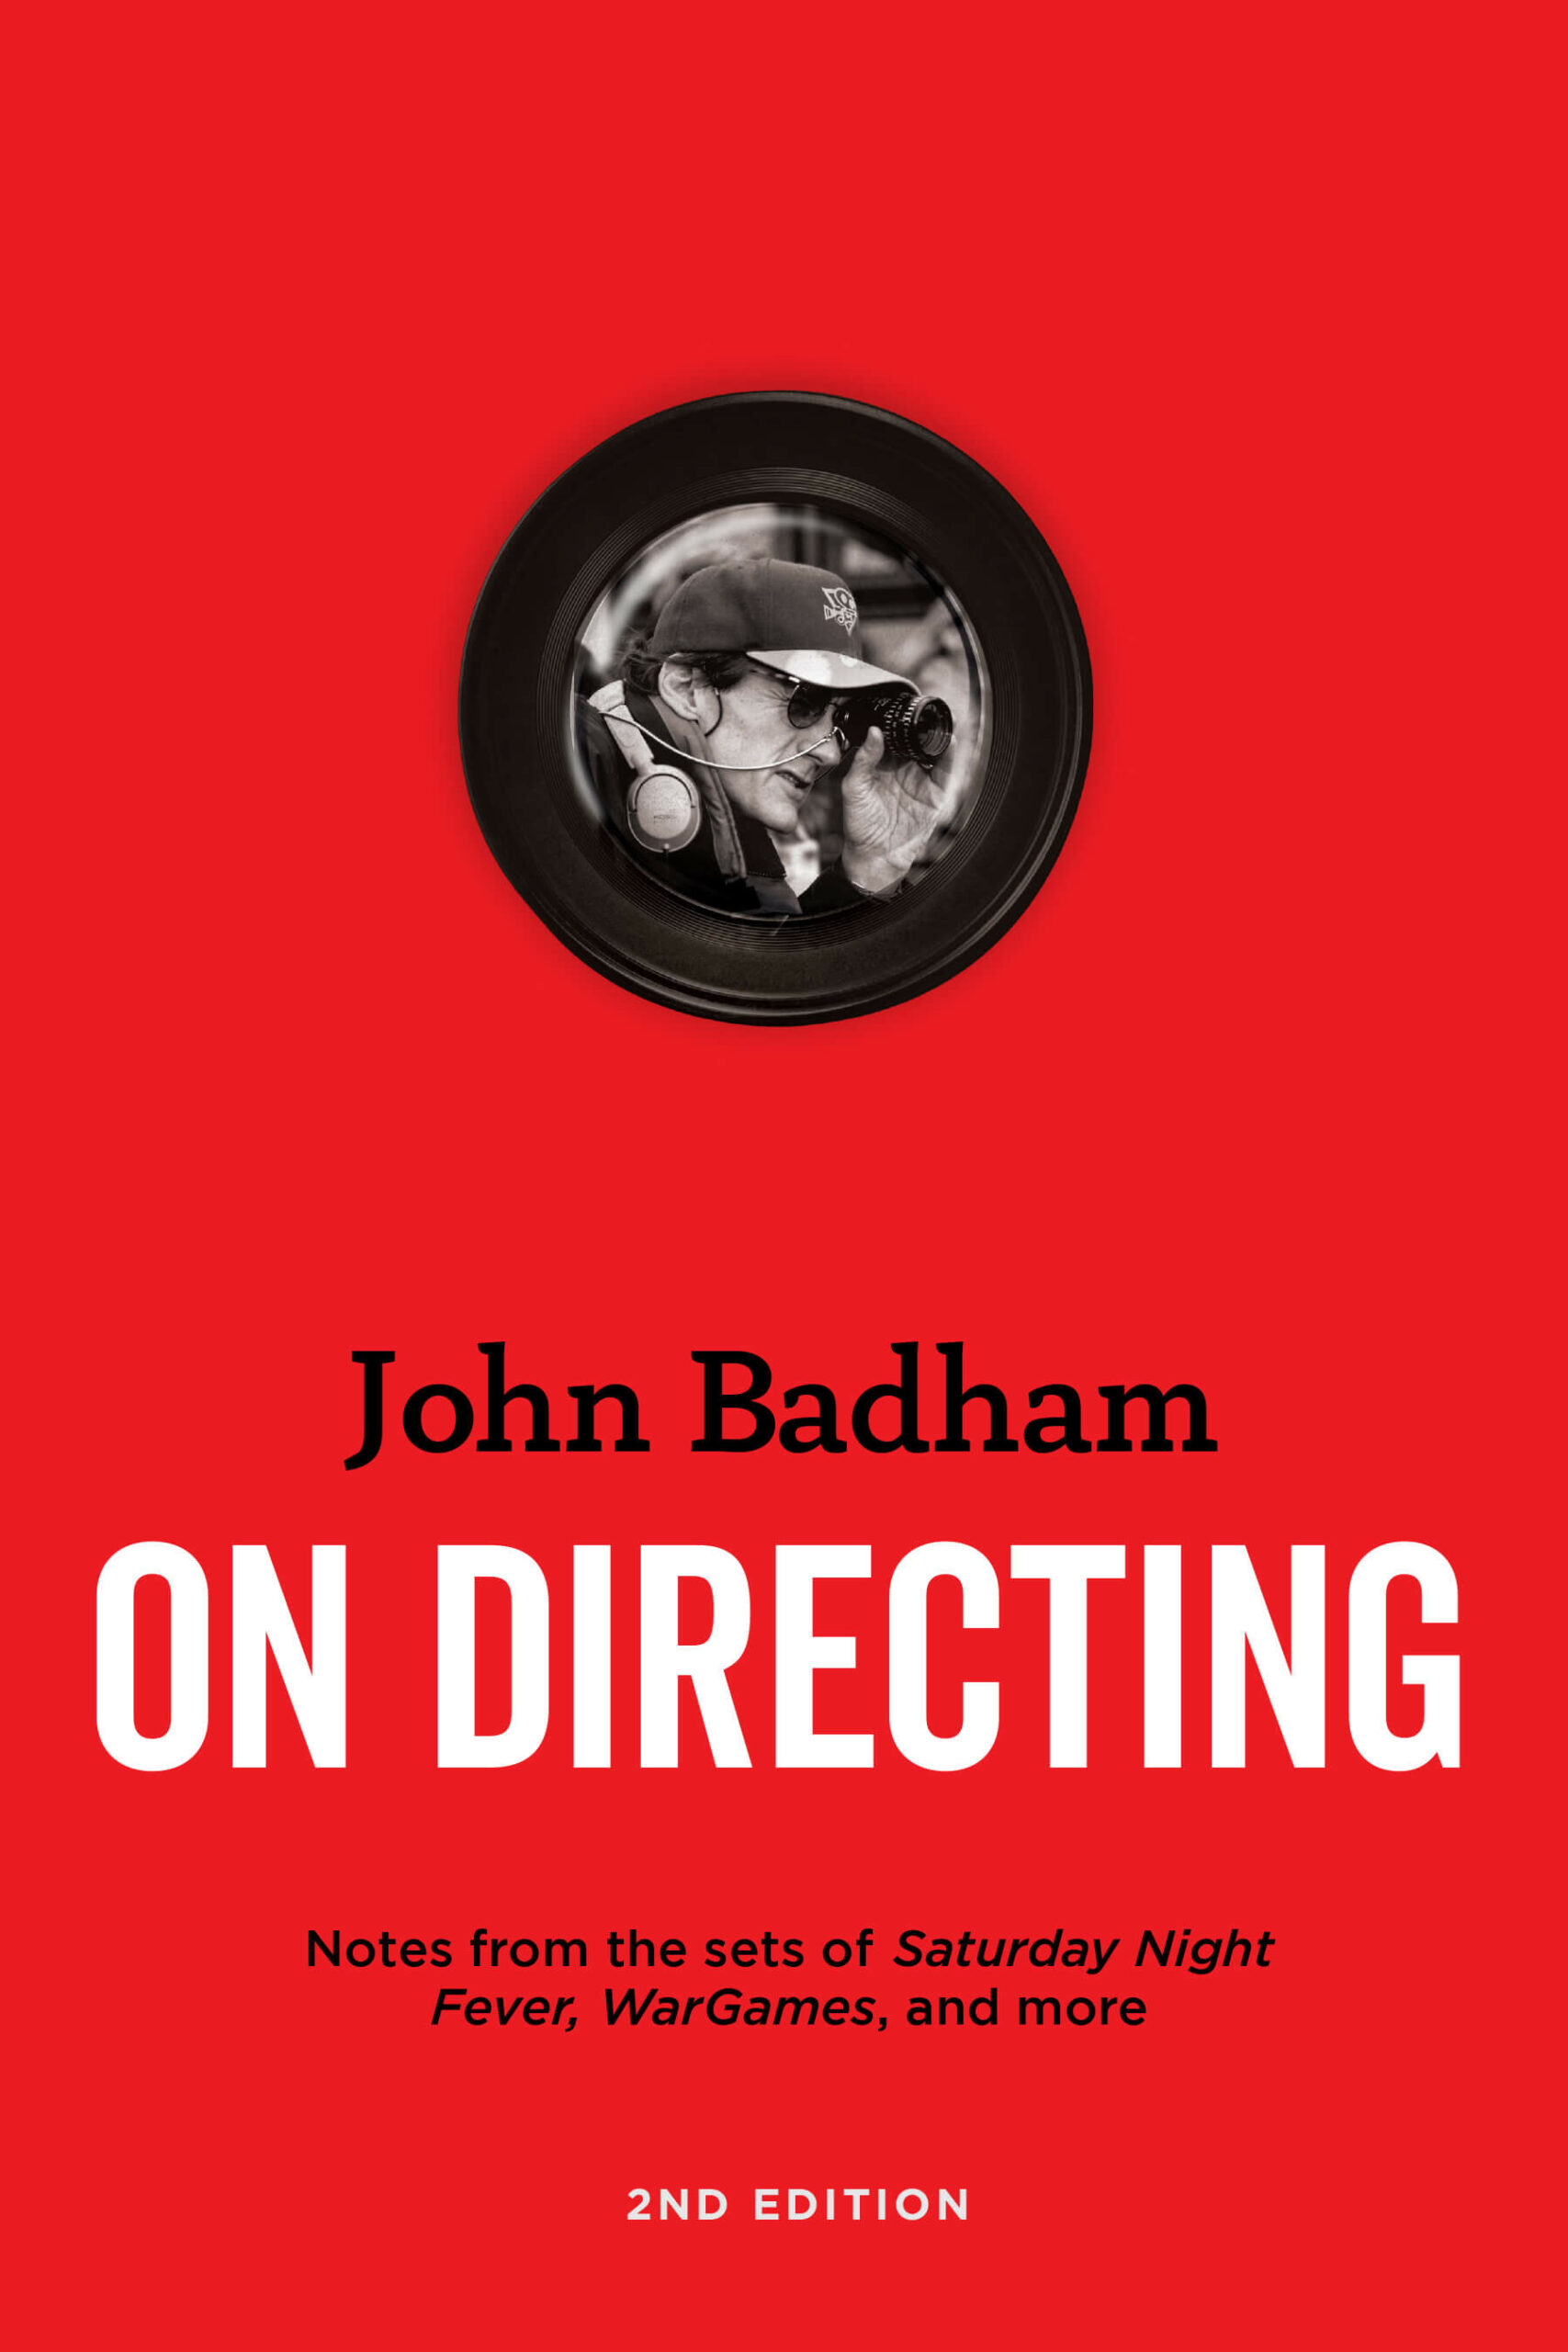 John Badham on Directing 2nd